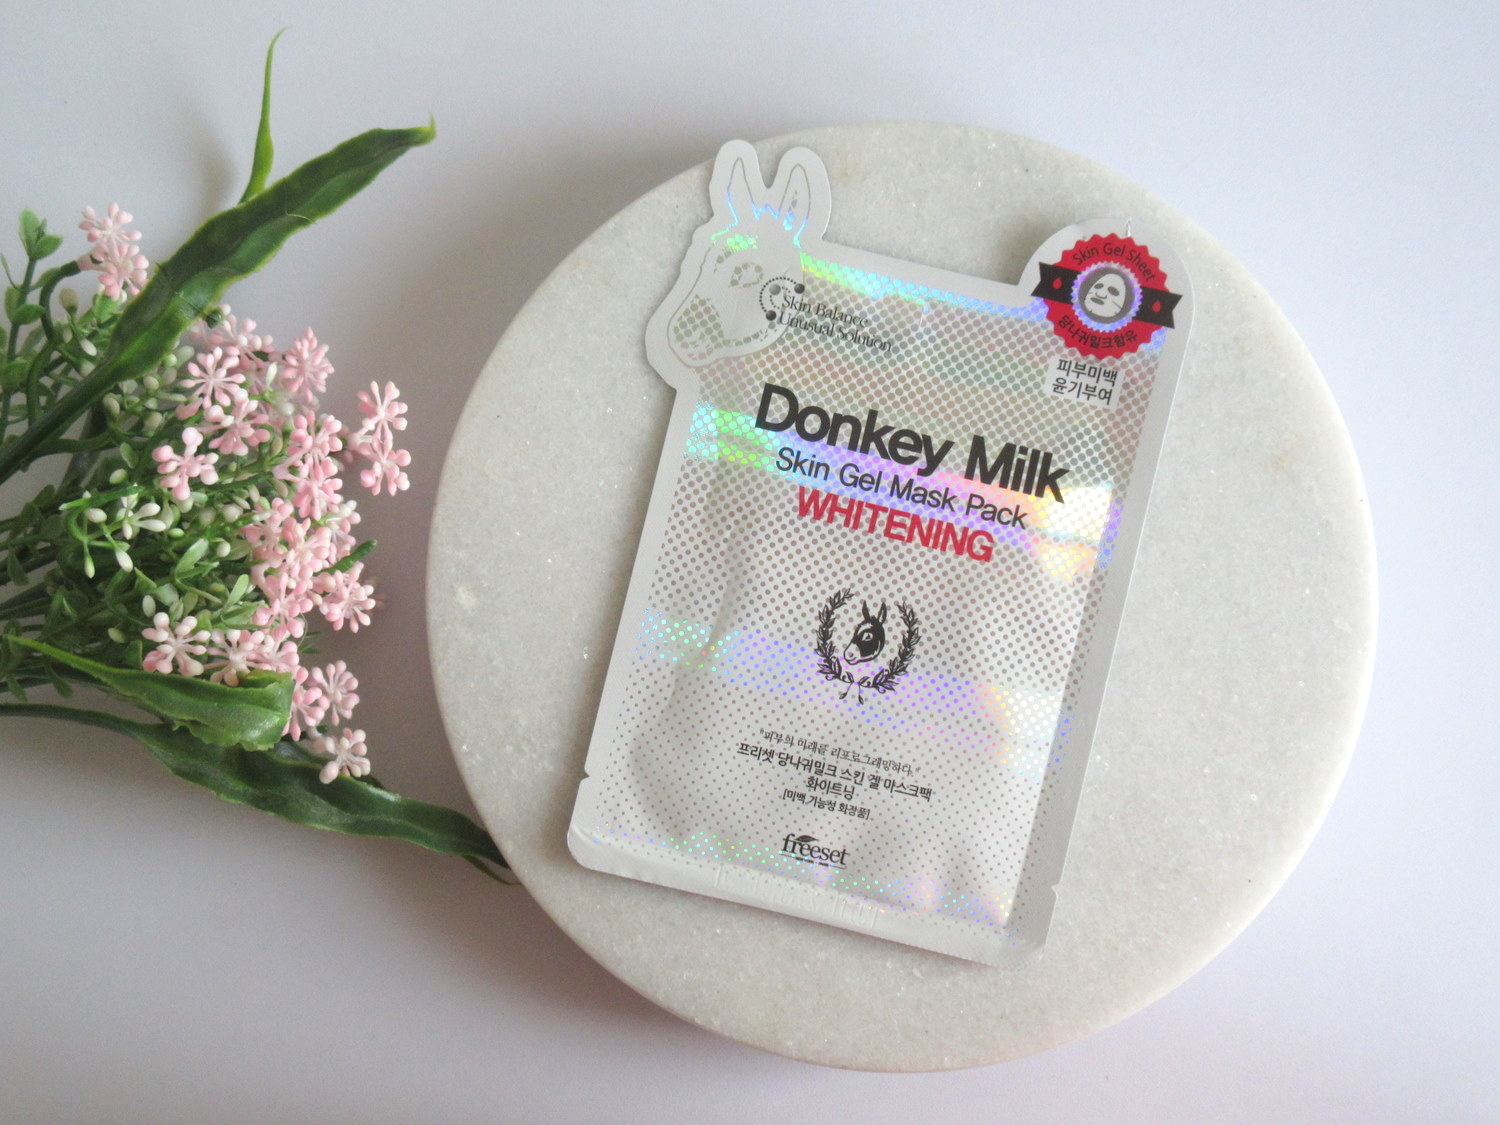 FREESET Donkey Milk Skin Gel Mask Whitening